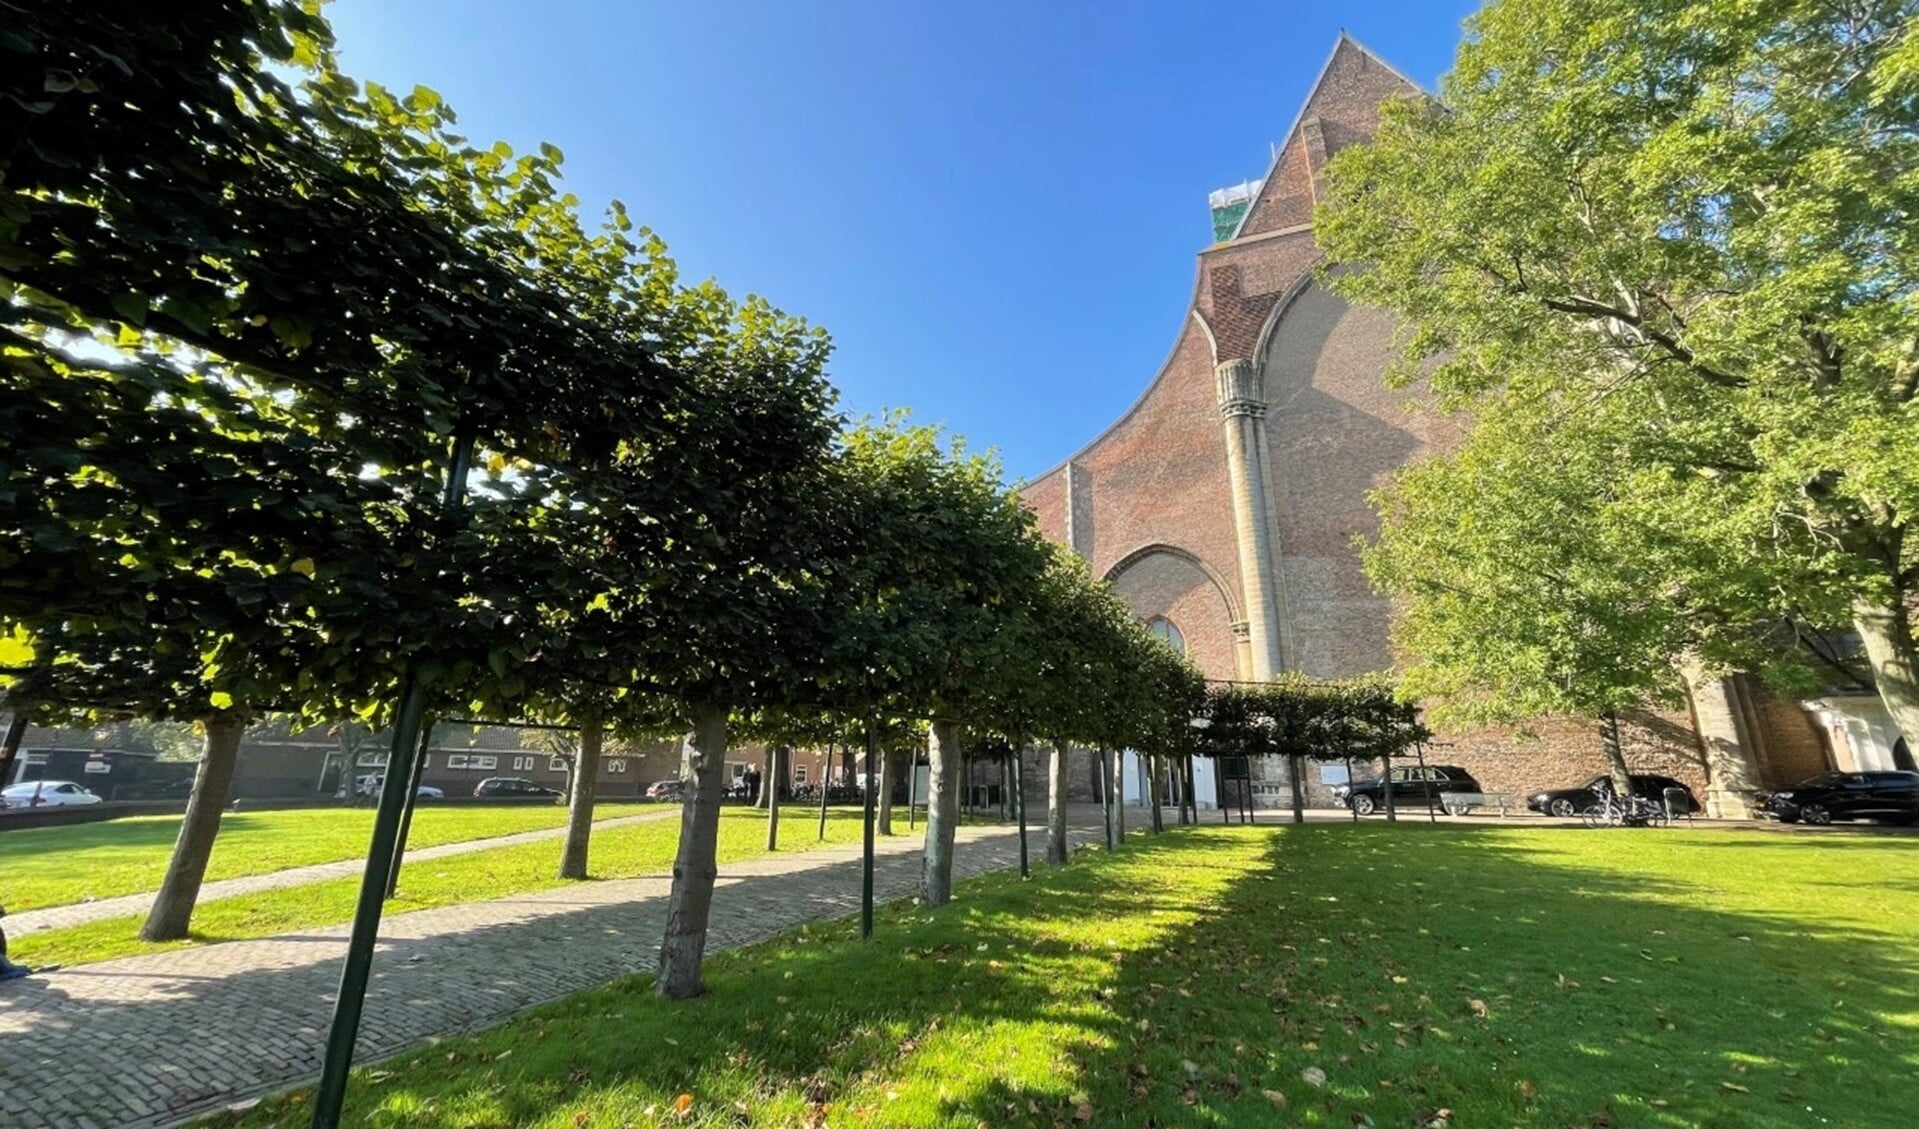  Het beeldhouwwerk krijgt eind dit jaar een plek in de kerktuin op het Sint Catharijnehof